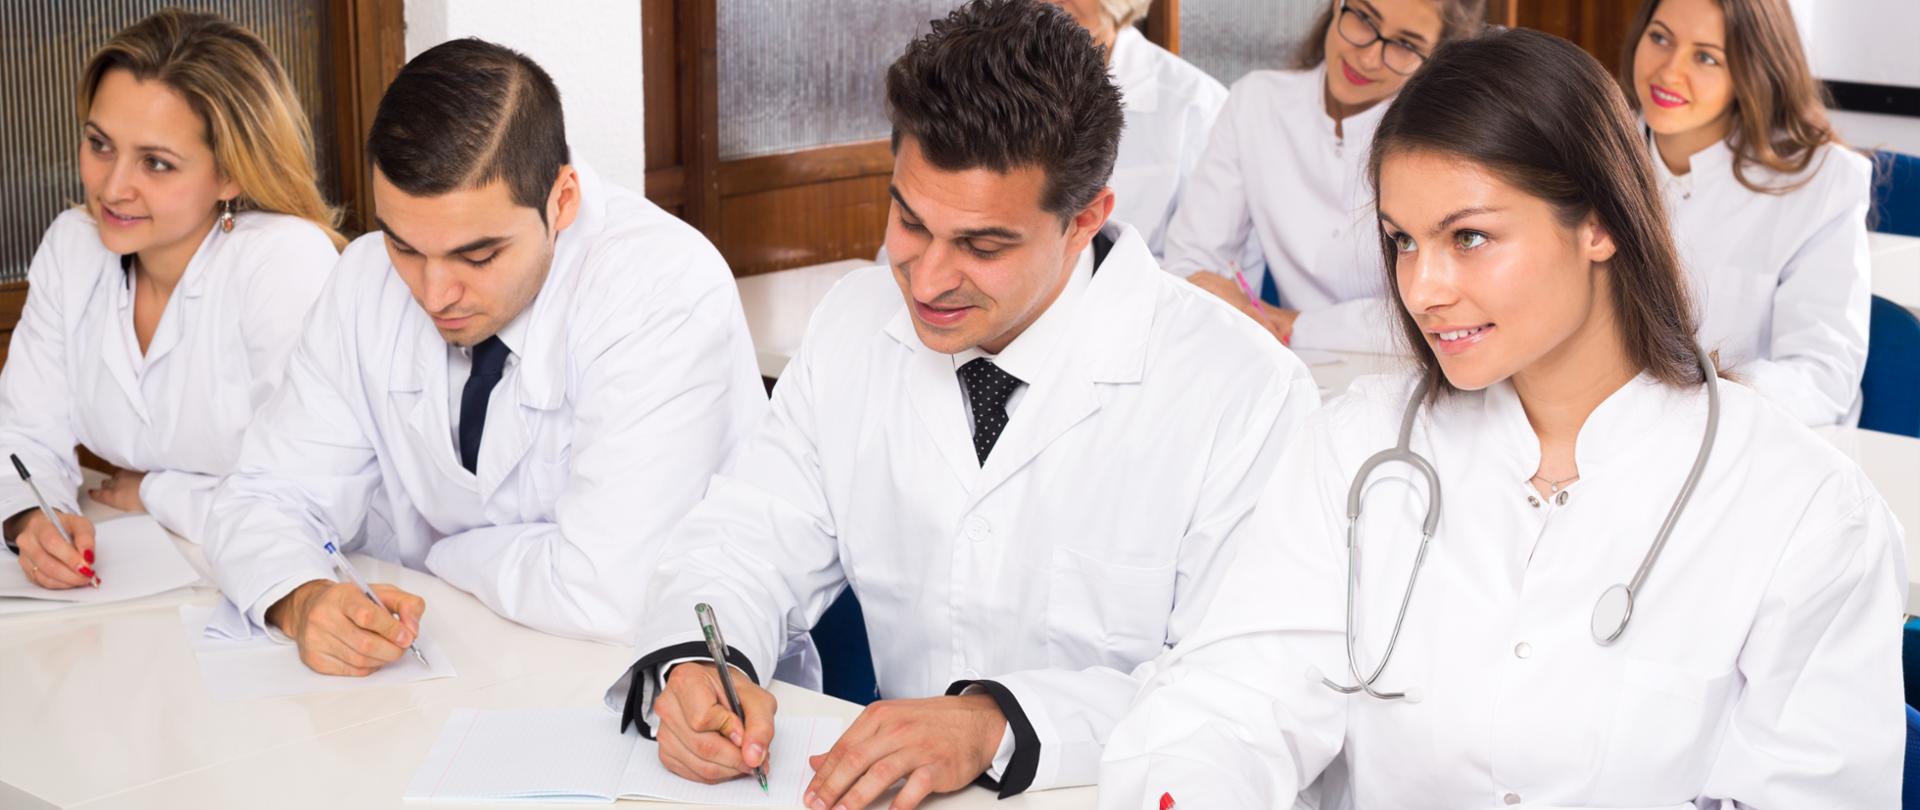 Zdjęcie ilustracyjne, przedstawiające młodych lekarzy robiących notatki przy biurkach.